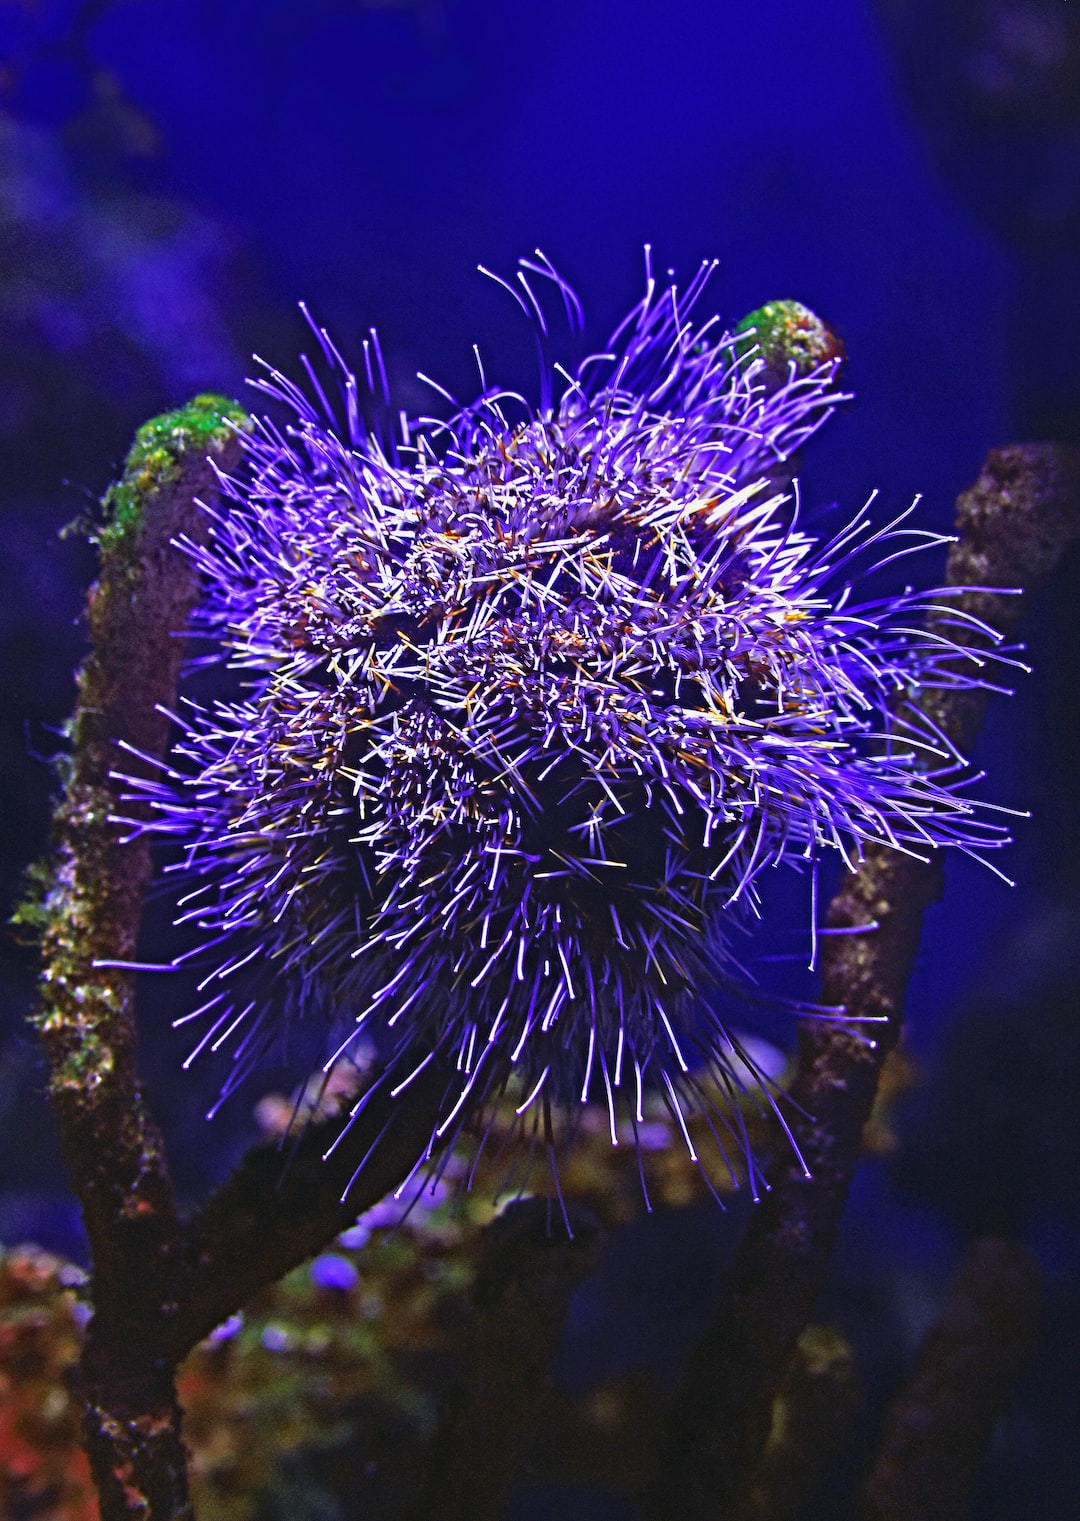 23 wichtige Fragen zu Kann Man Kratzer Im Aquarium Beseitigen?